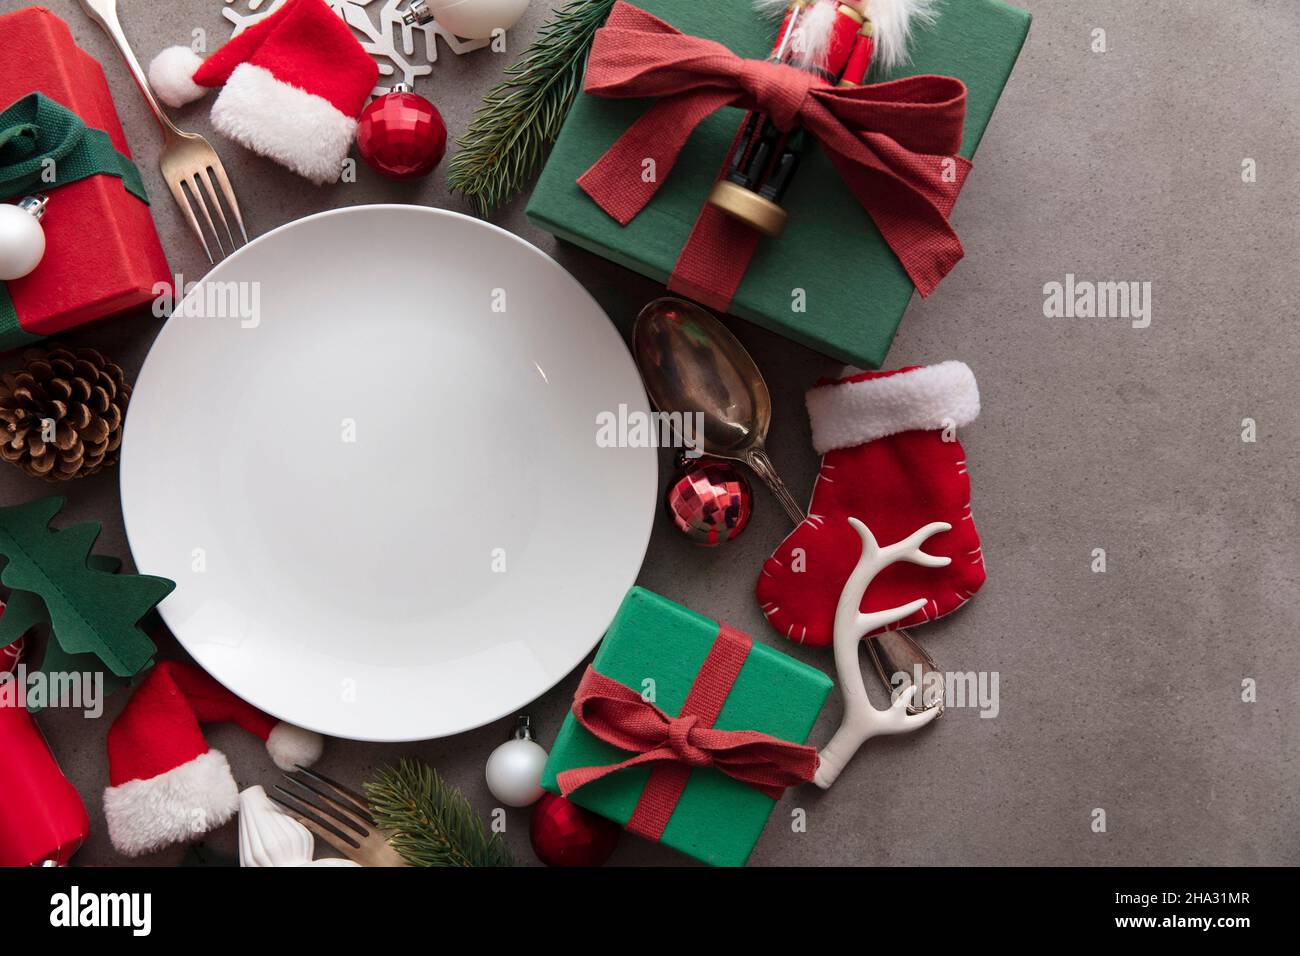 Cena natalizia di sottofondo. Piatto bianco vuoto con decorazioni natalizie Foto Stock